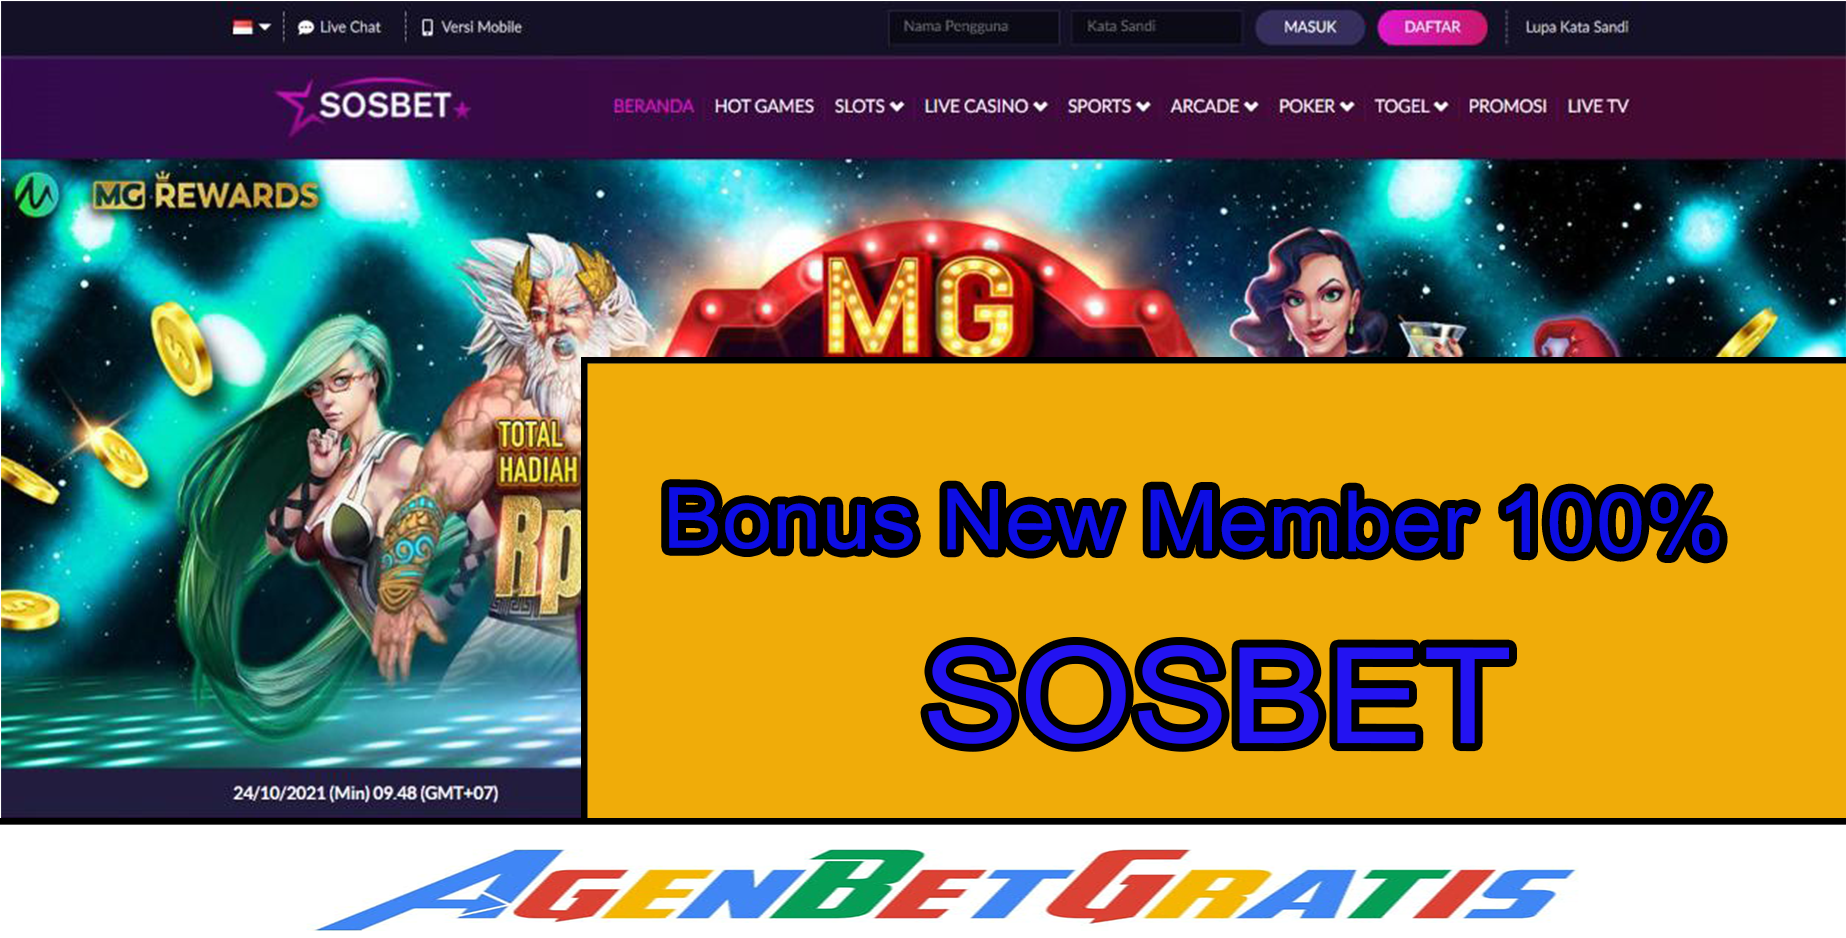 SOSBET - Bonus New Member 100%